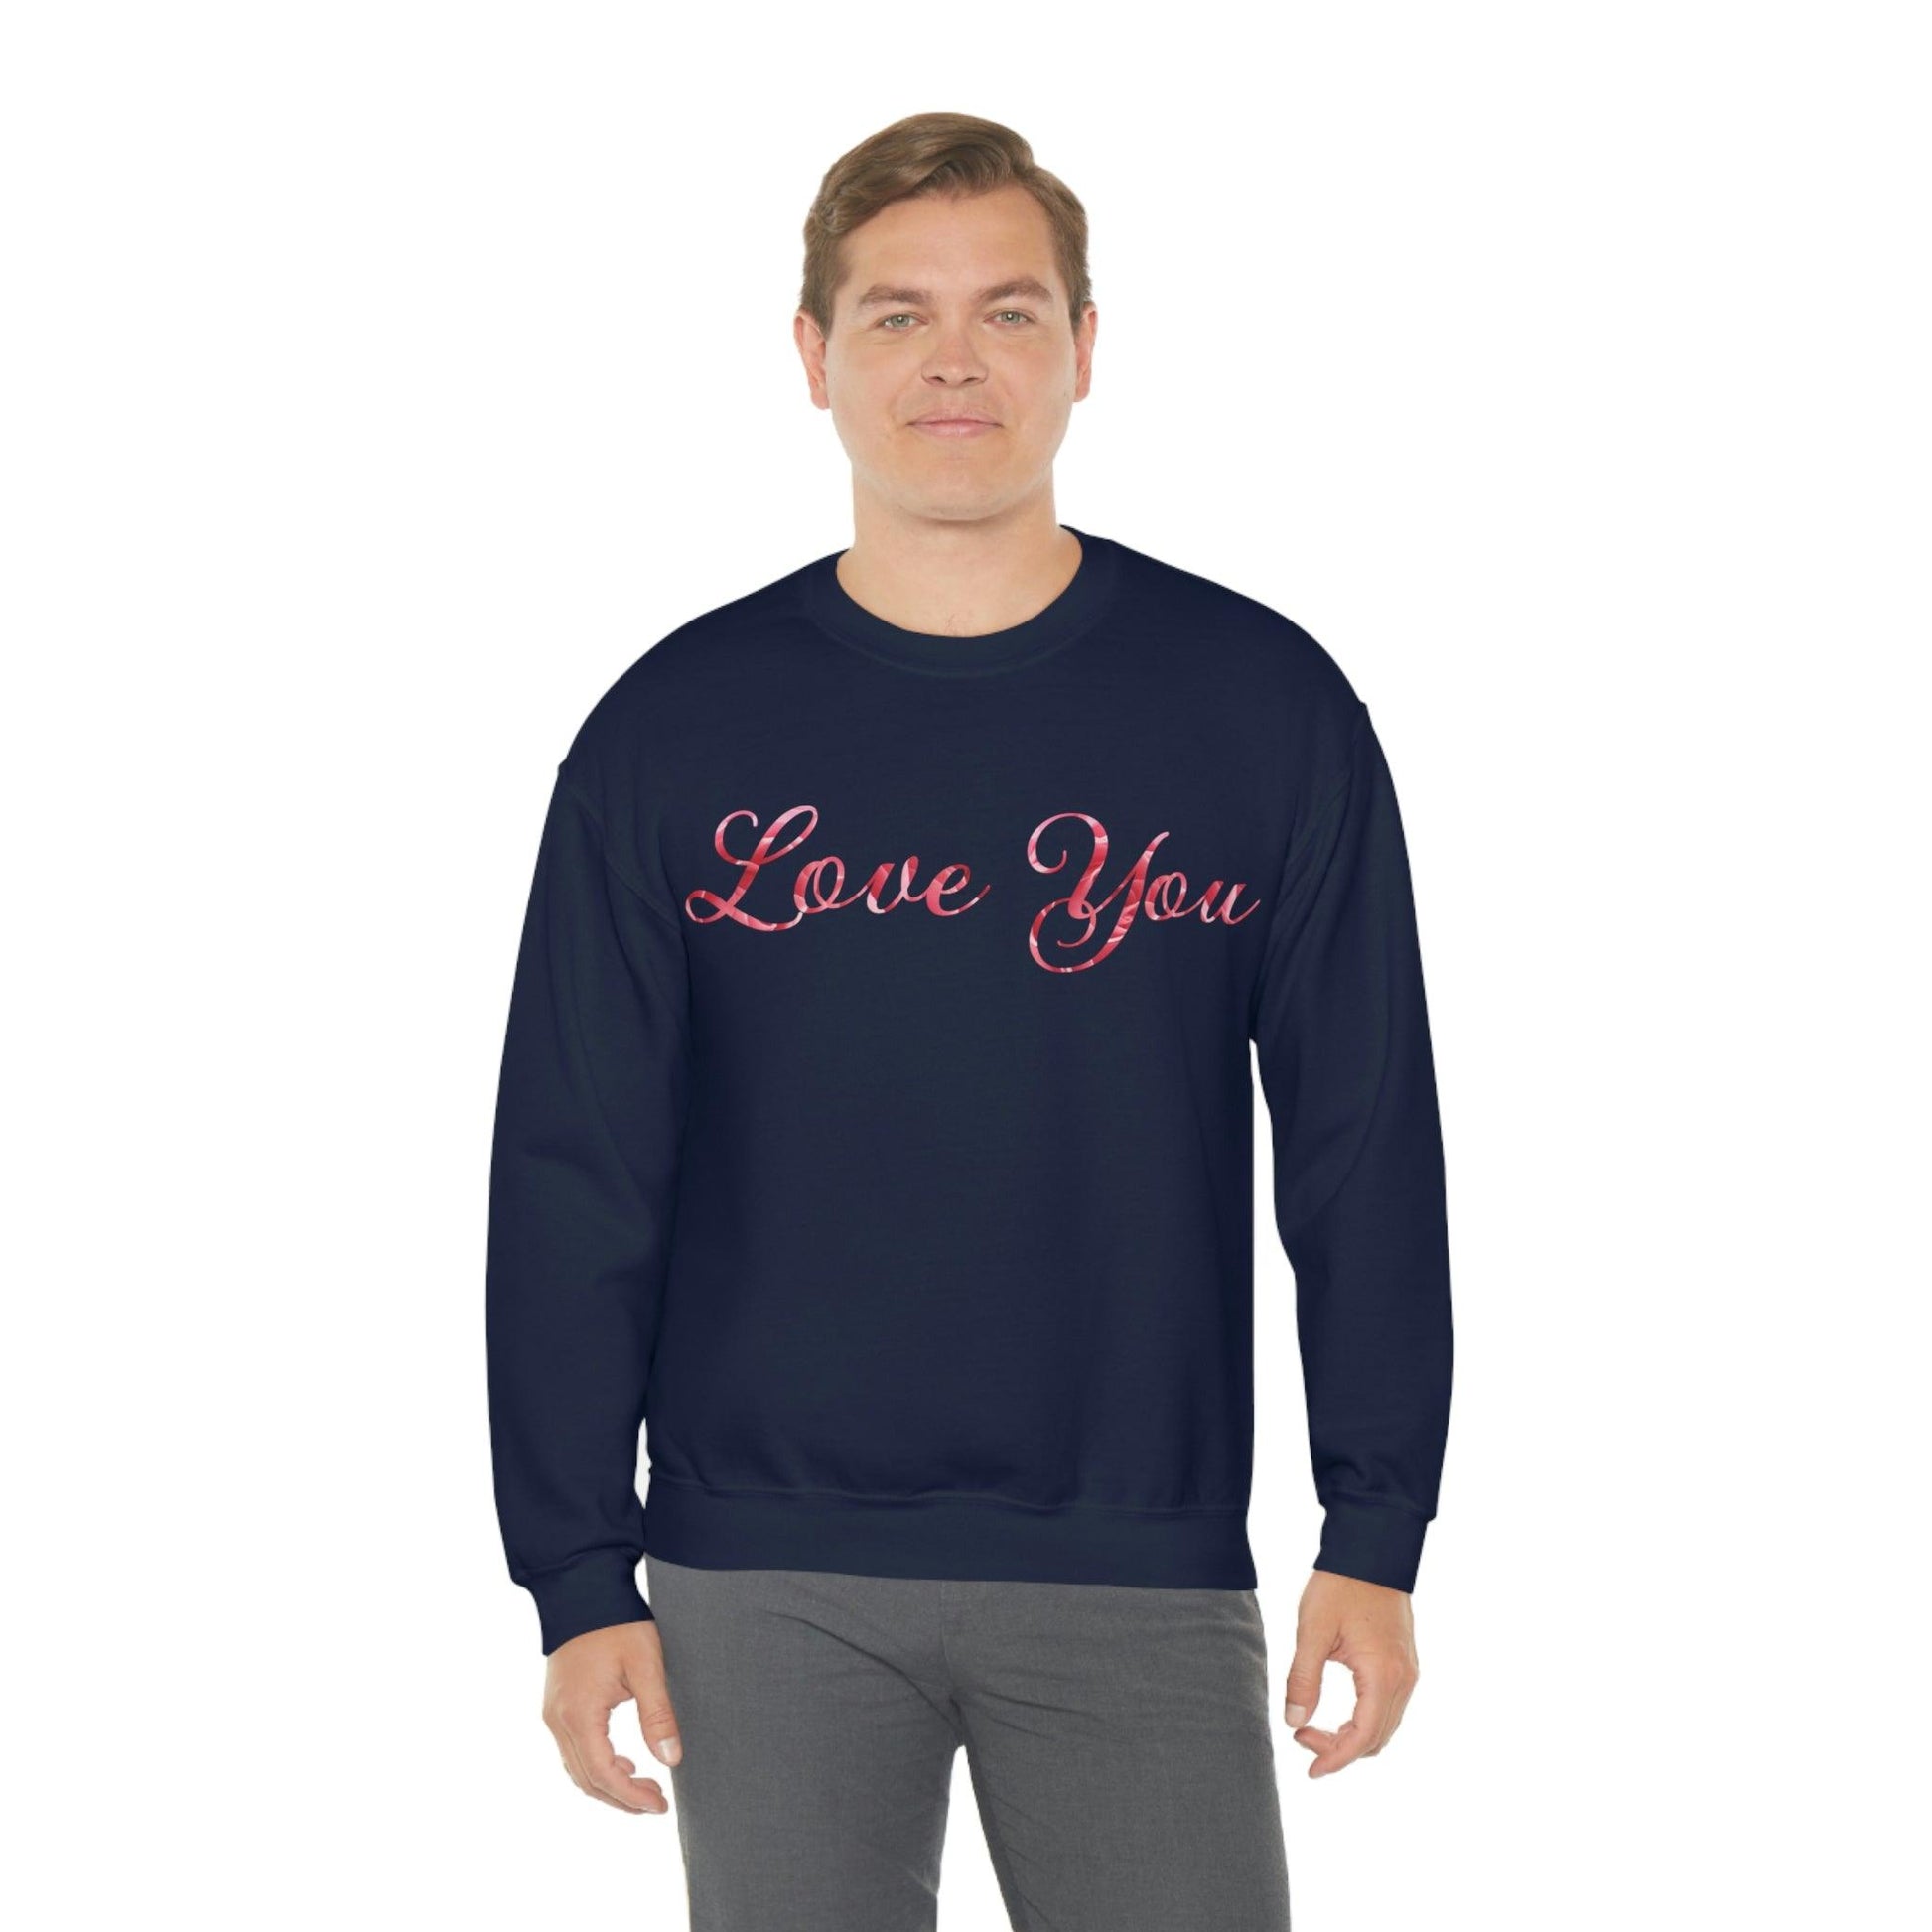 Love You Sweatshirt, love shirt, wedding gift, engagement gift, anniversary gift, couple shirt, matching shirt - Giftsmojo